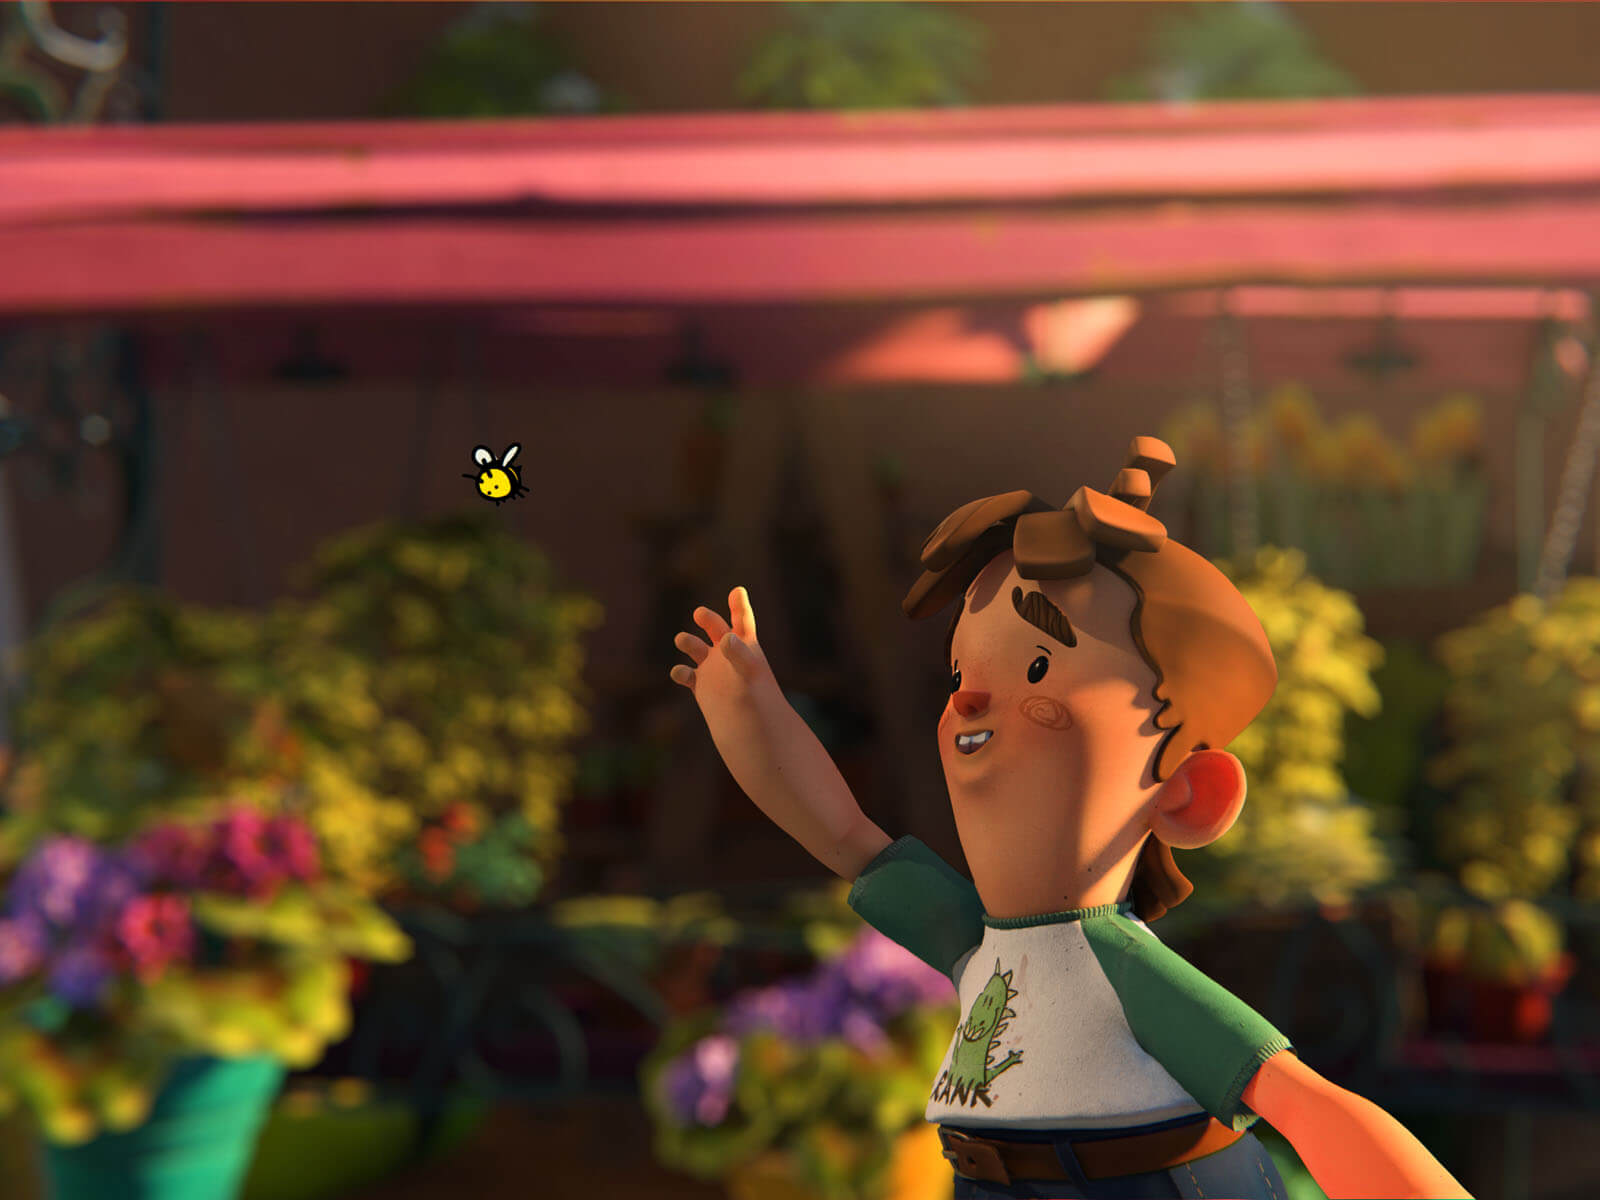 Un niño persigue una abeja frente a un lugar lleno de flora y flores.